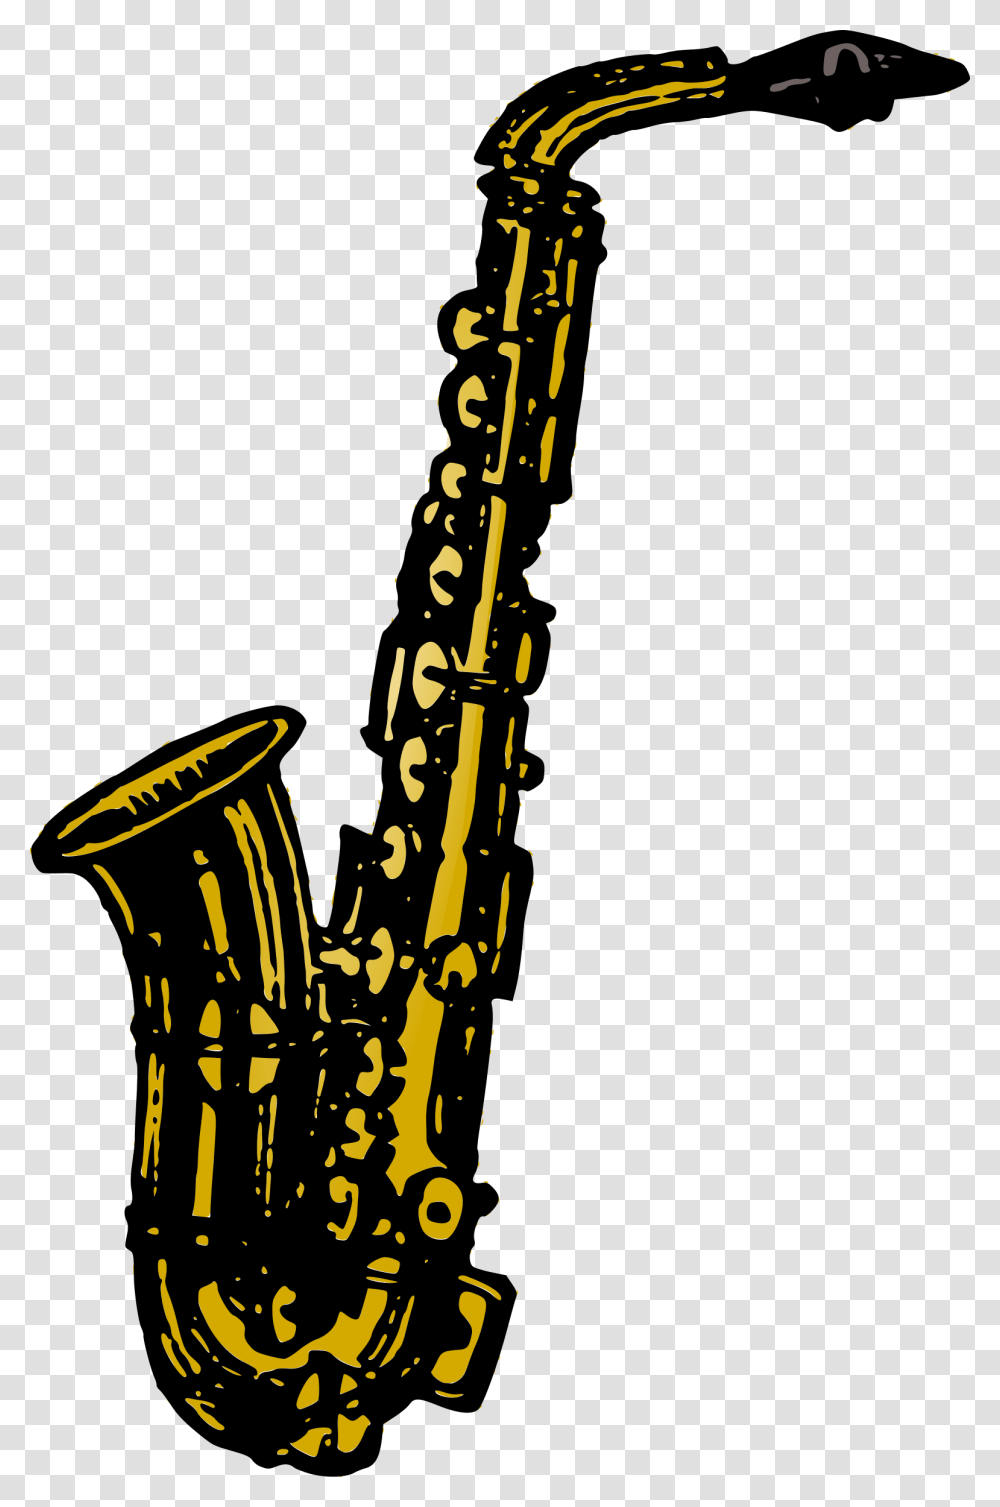 Alto Saxophone Clip Art, Leisure Activities, Musical Instrument Transparent Png